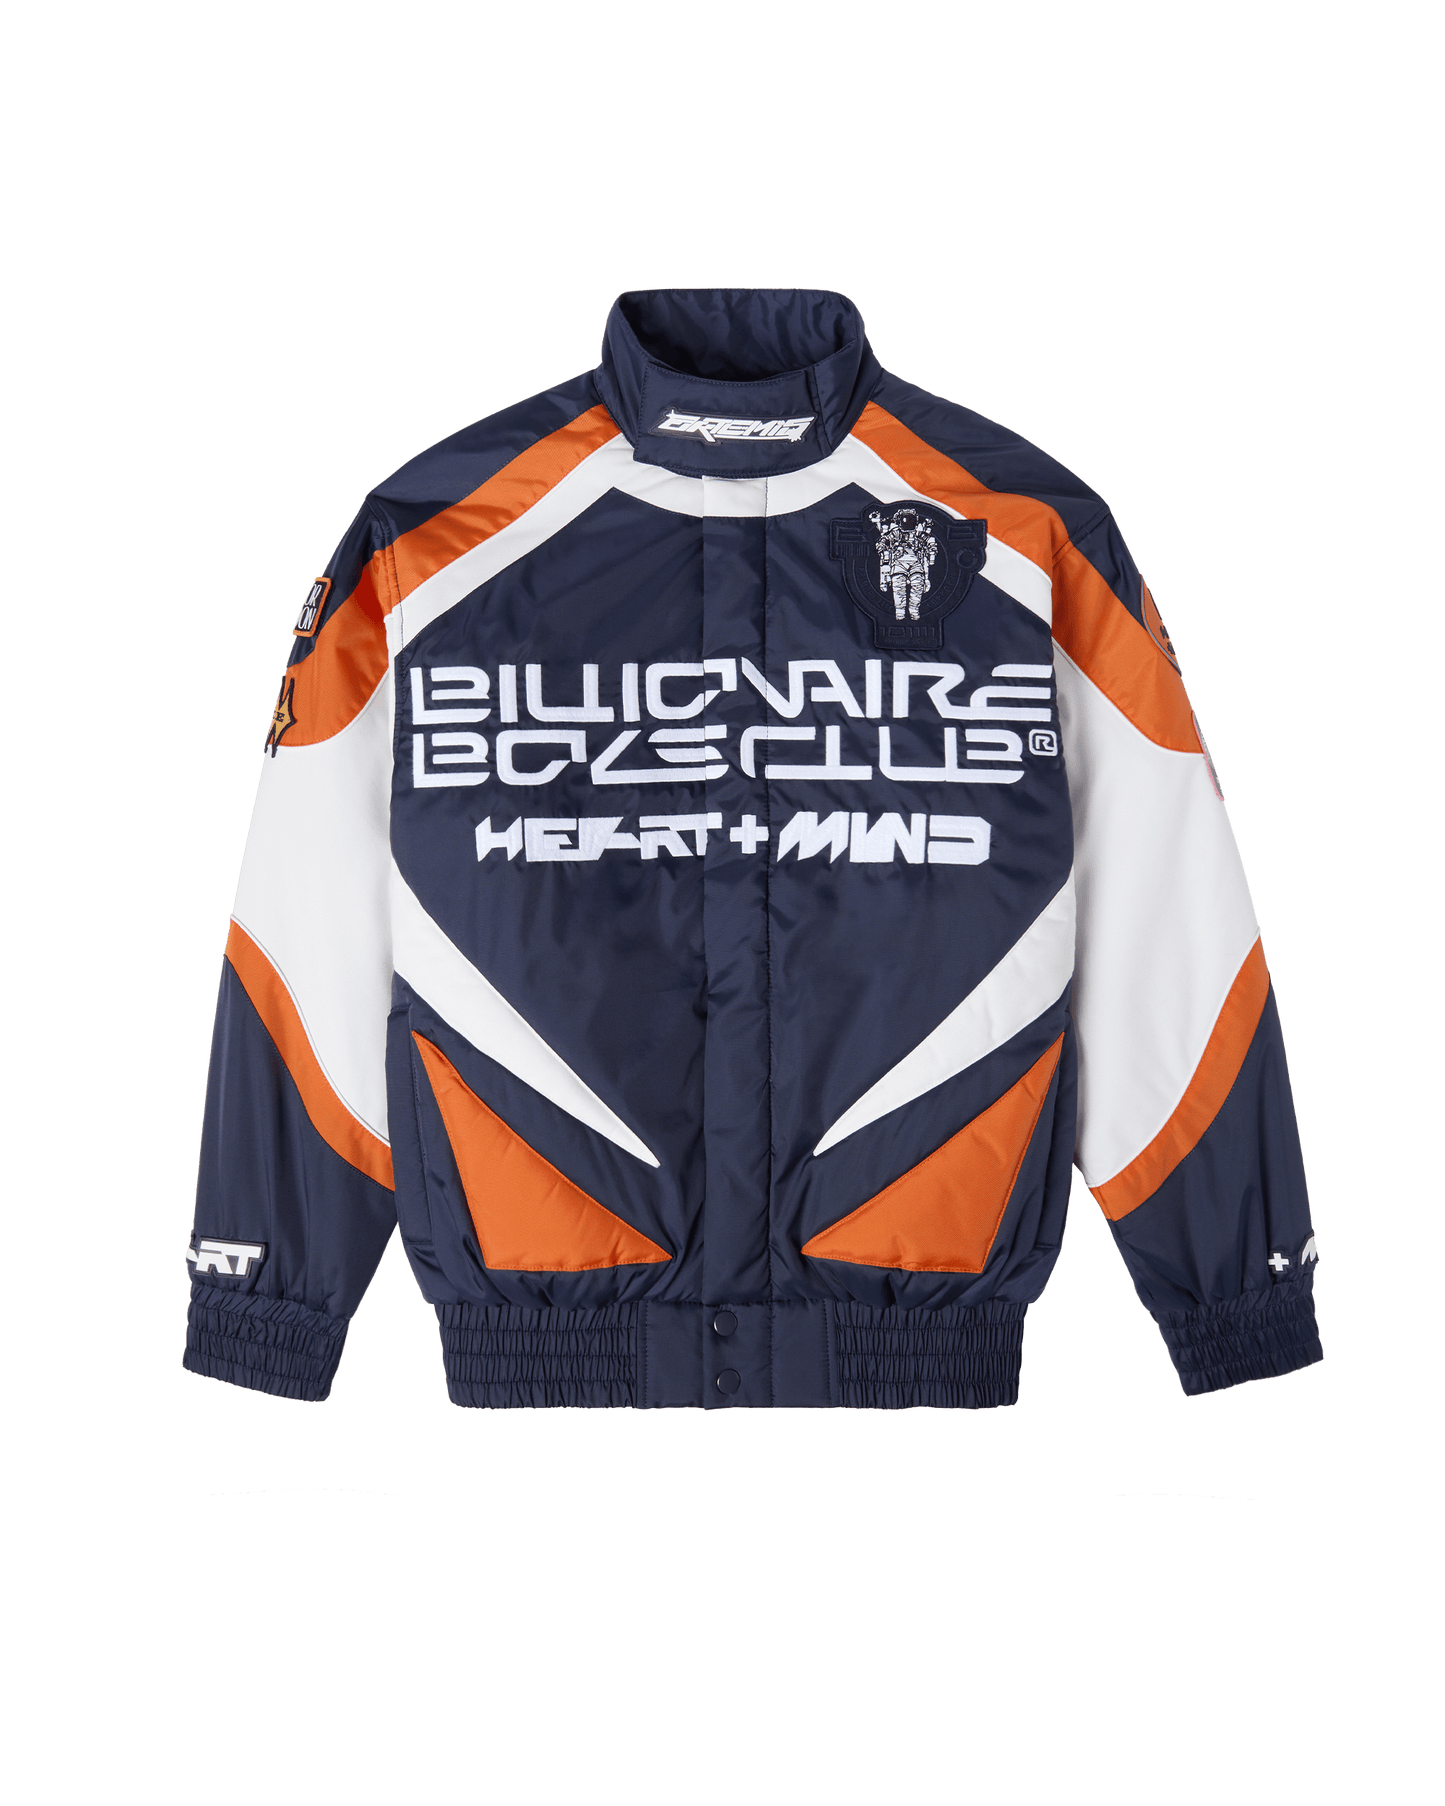 Space Suit Jacket – Billionaire Boys Club